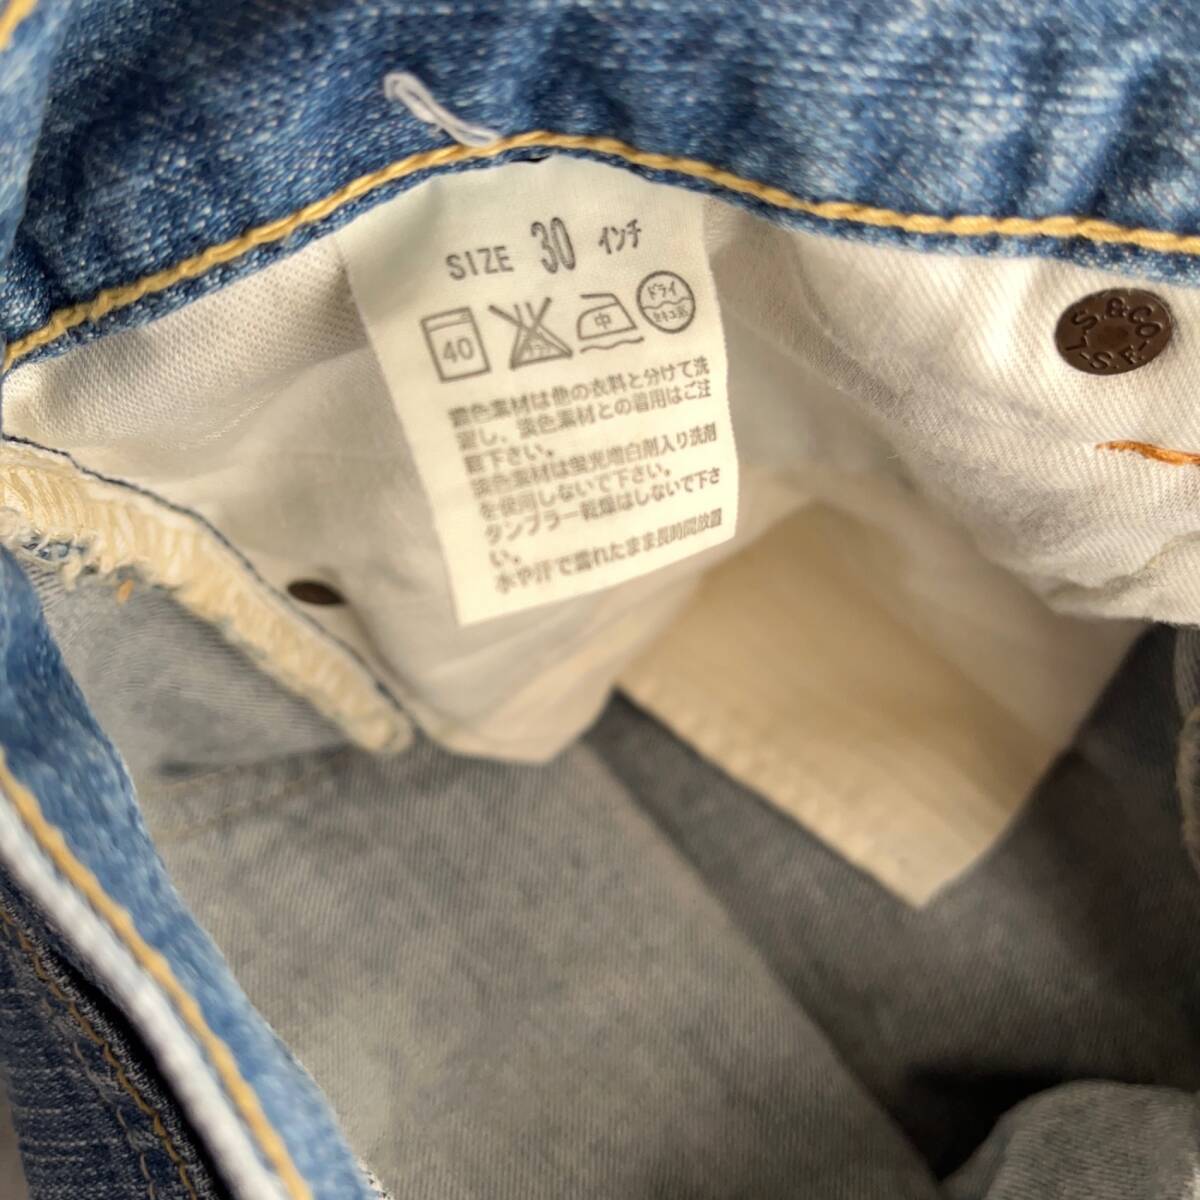 1 старт шорты б/у одежда Levi's Carhartt Dickies джинсы Work 8 надеты комплект стирка завершено продажа комплектом мужской 